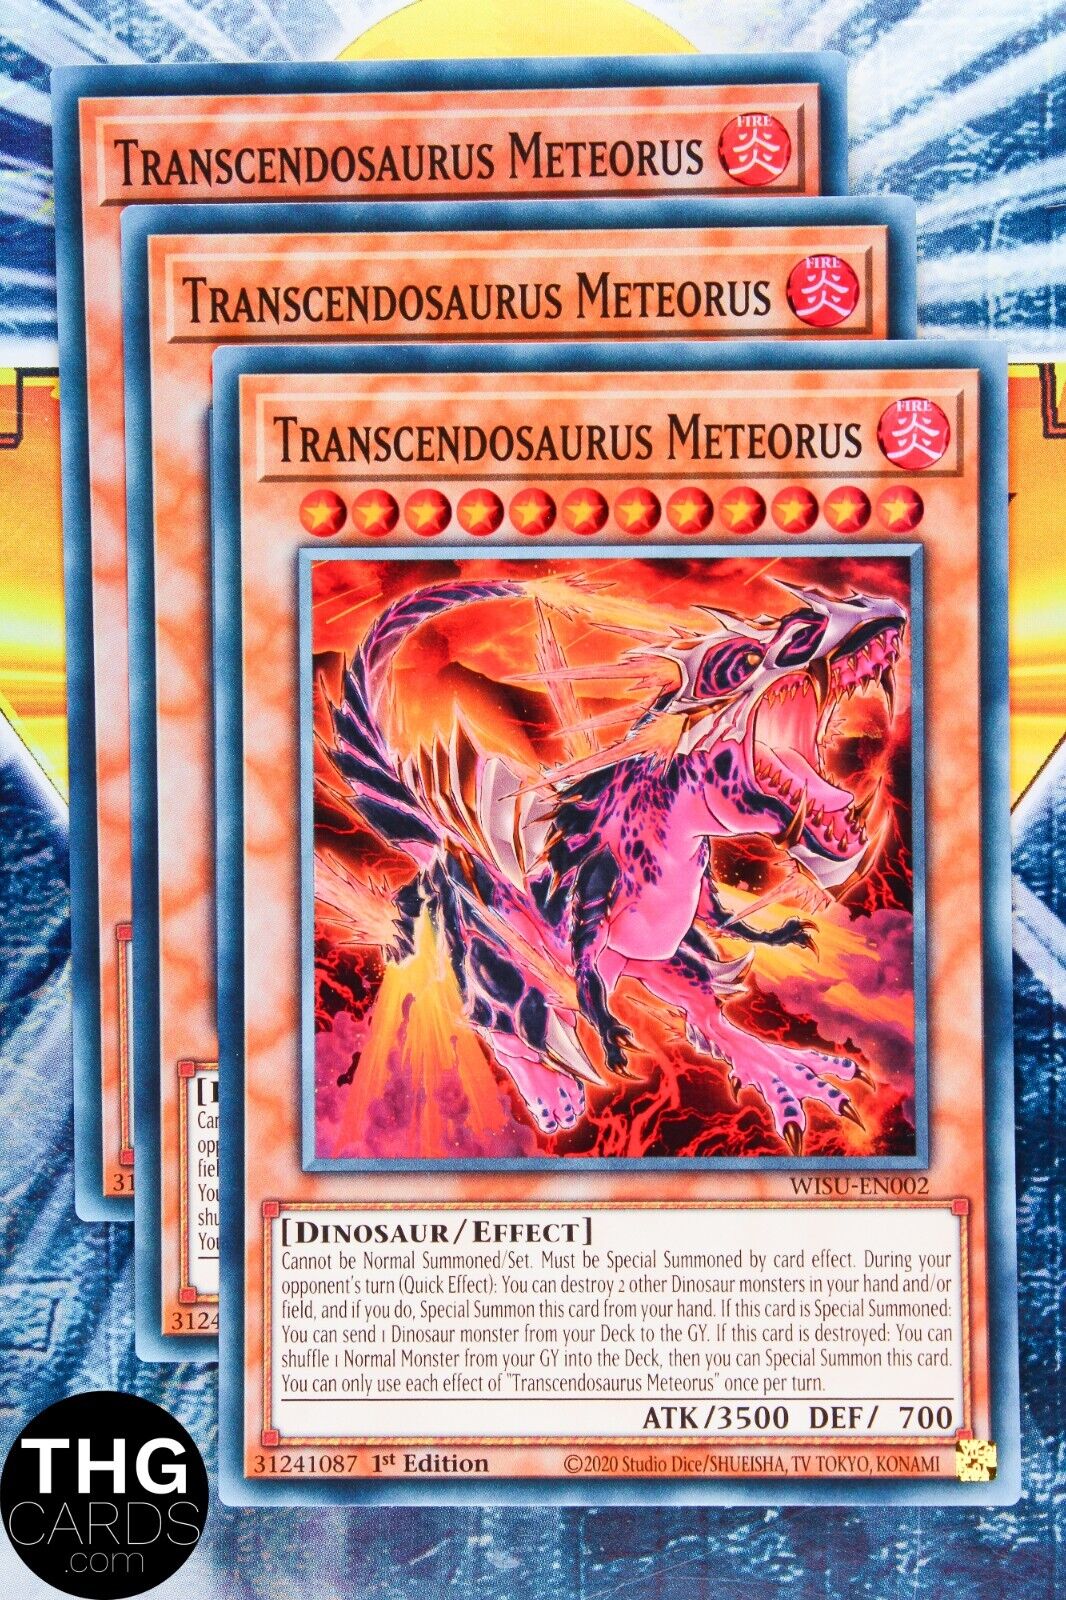 Transcendosaurus Meteorus WISU-EN002 1st Edition Super Rare Yugioh Card Playset